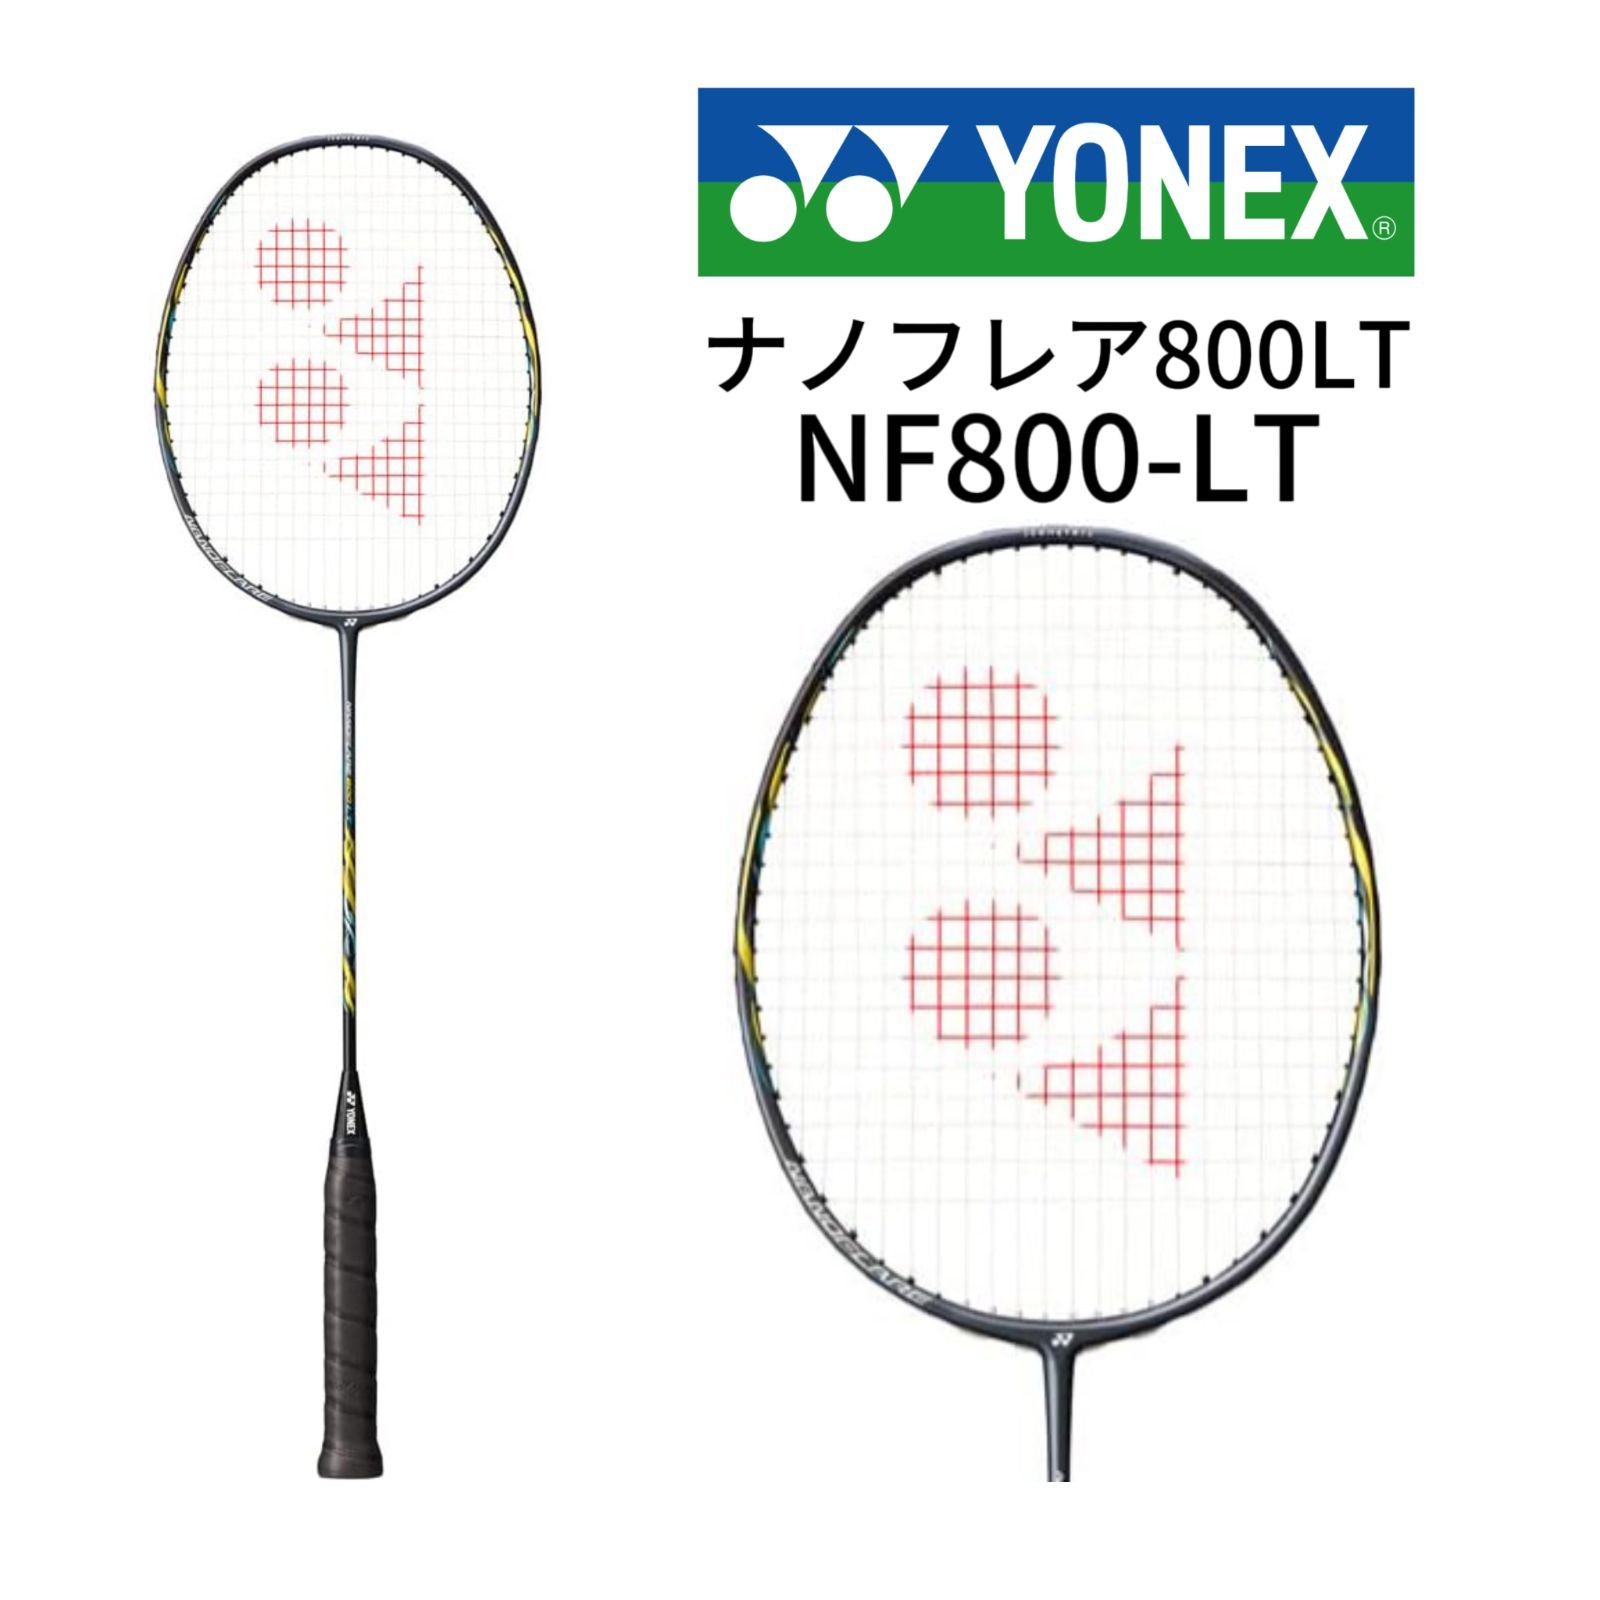 新品 YONEX ヨネックス ナノフレア800LT NF800-LT 5UG5バドミントン ラケット